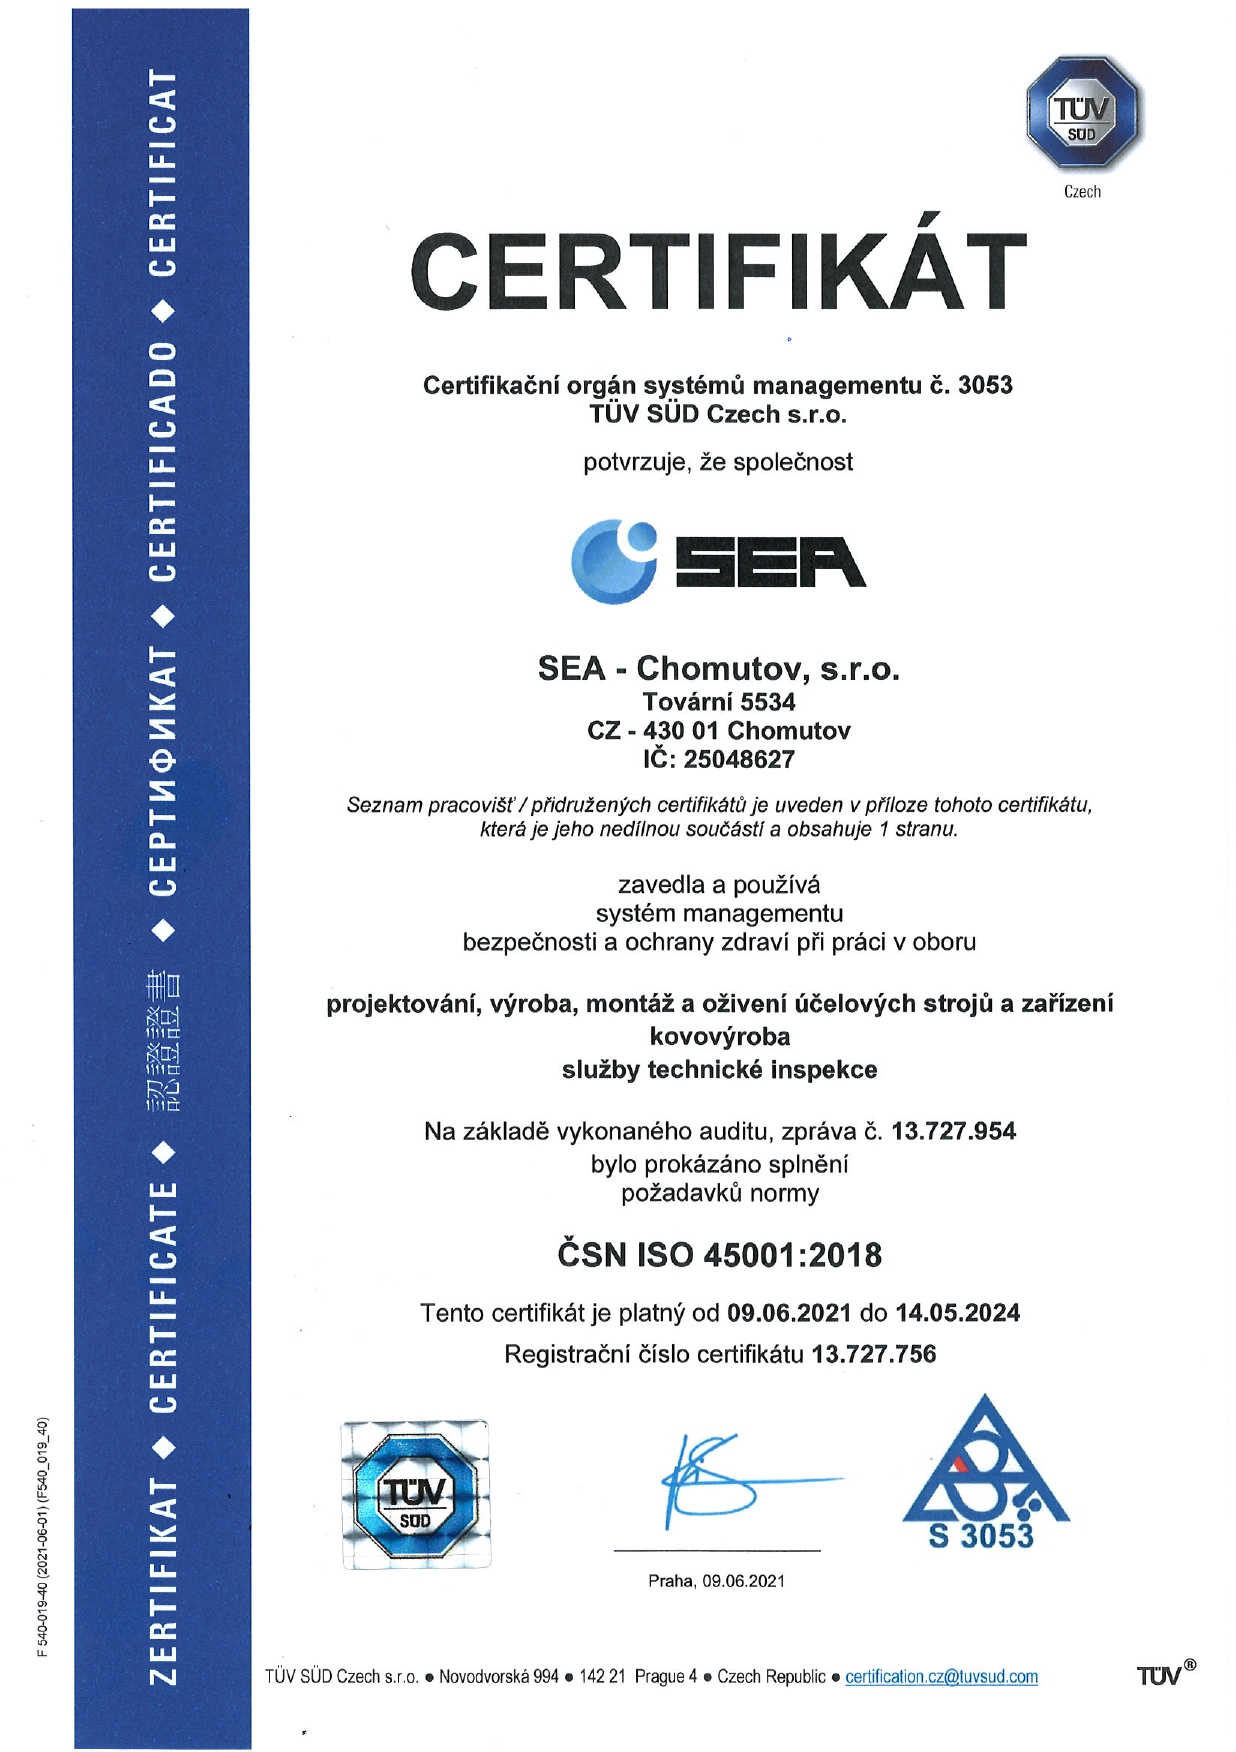 Certifikát systému managementu bezpečnosti a ochrany zdraví při práci podle ČSN ISO 45001:2018